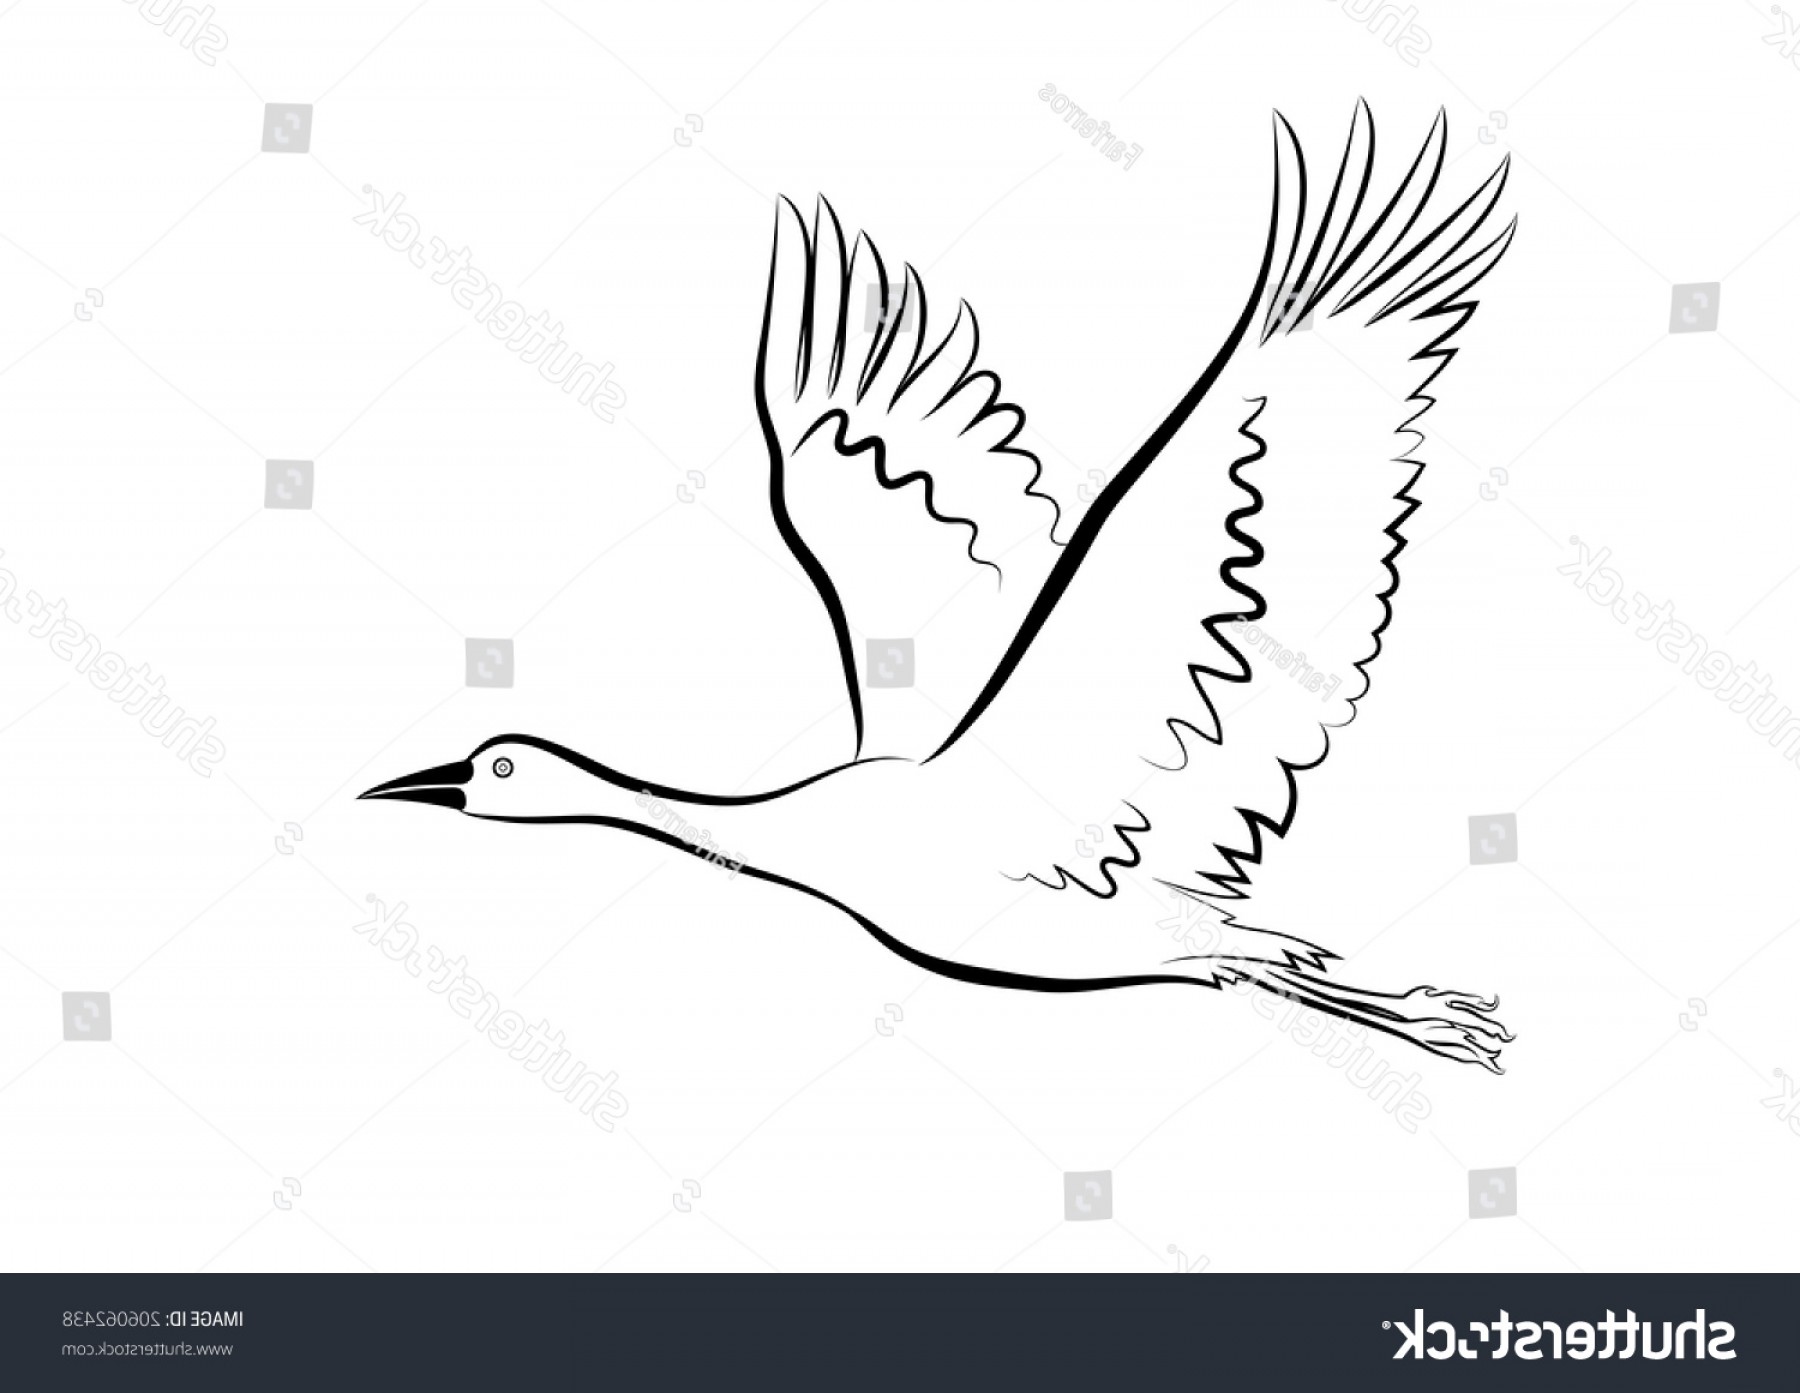 Рисунок летящего лебедя карандашом - 81 фото